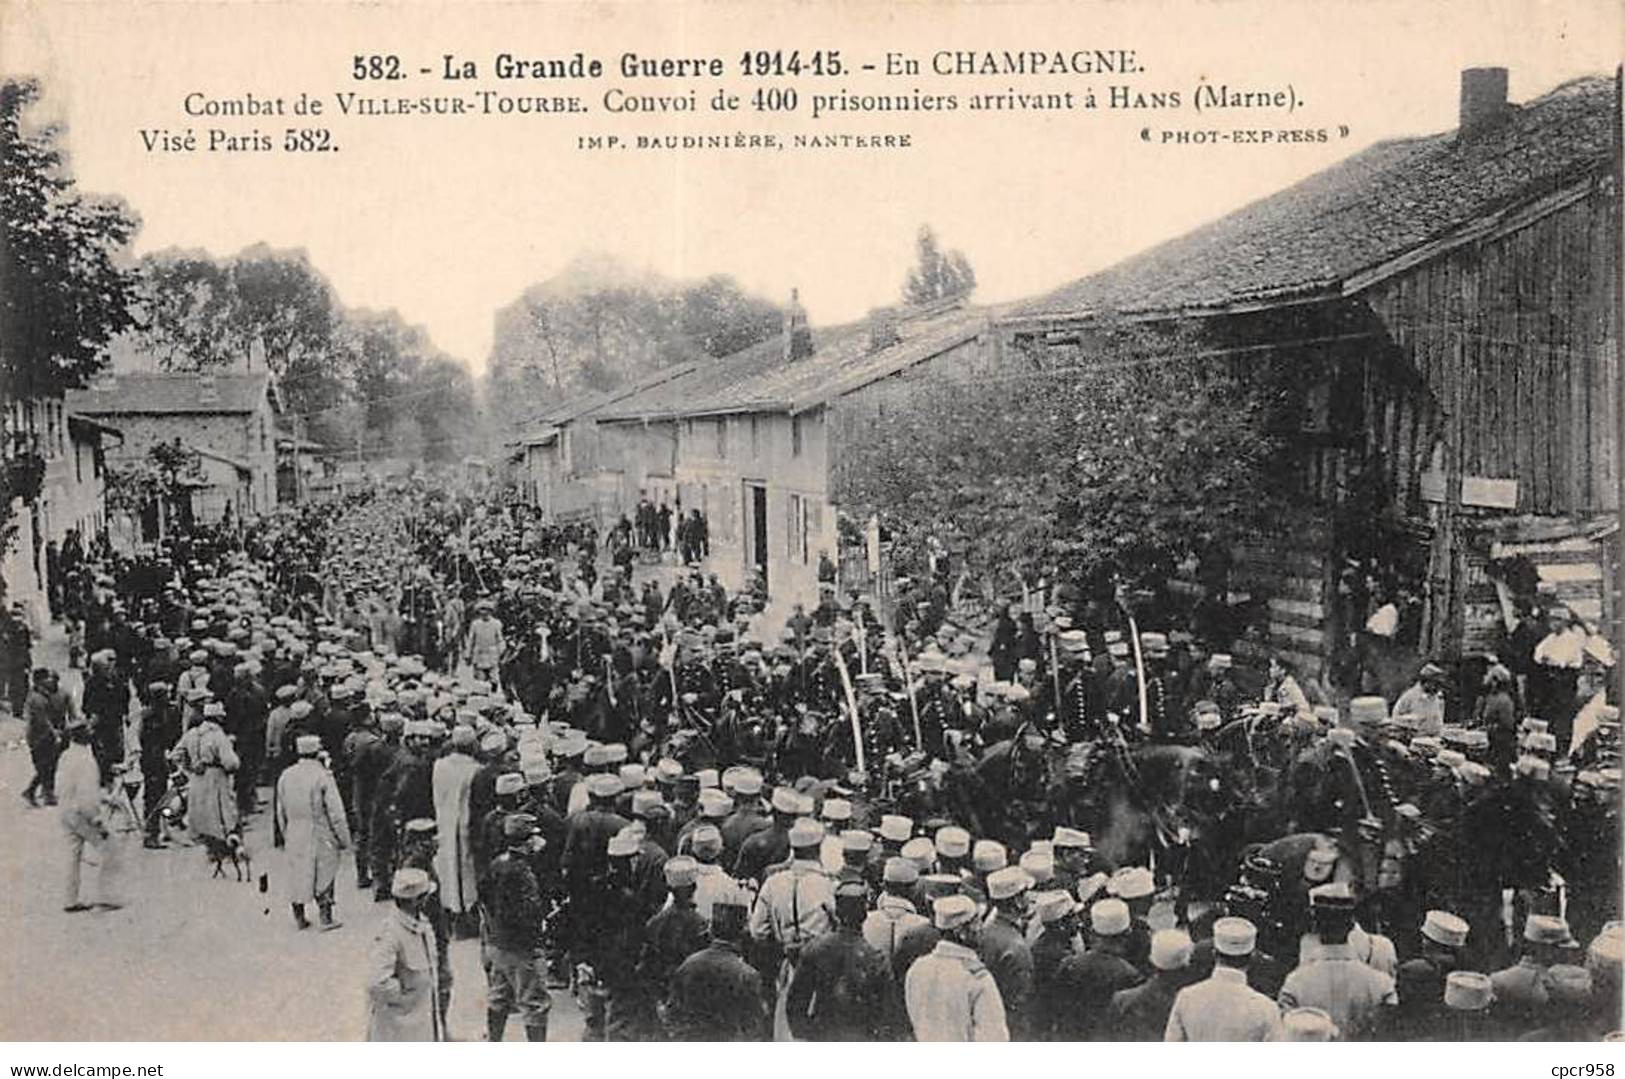 51 - VILLE SUR TOURBE - SAN37498 - Convoi De 400 Prisonniers Arrivant à Hans - Combat De Ville Sur Tourbe - Ville-sur-Tourbe